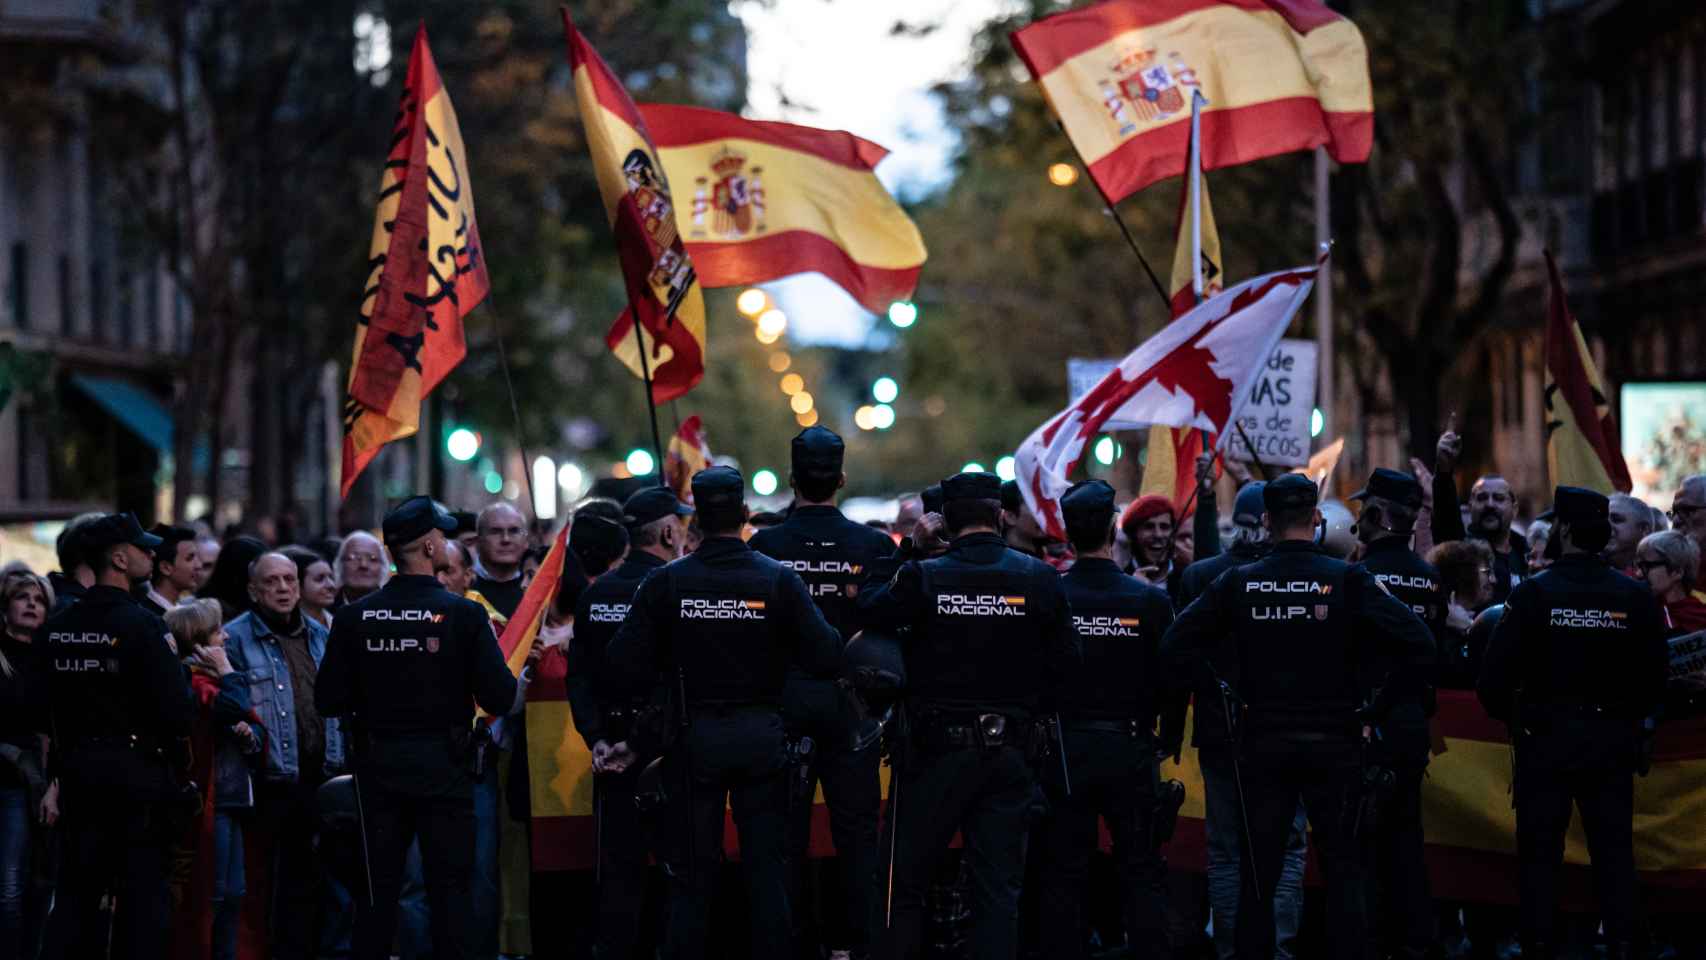 Manifestaciones a favor y en contra de Sánchez este sábado en Madrid: horario y cortes de tráfico